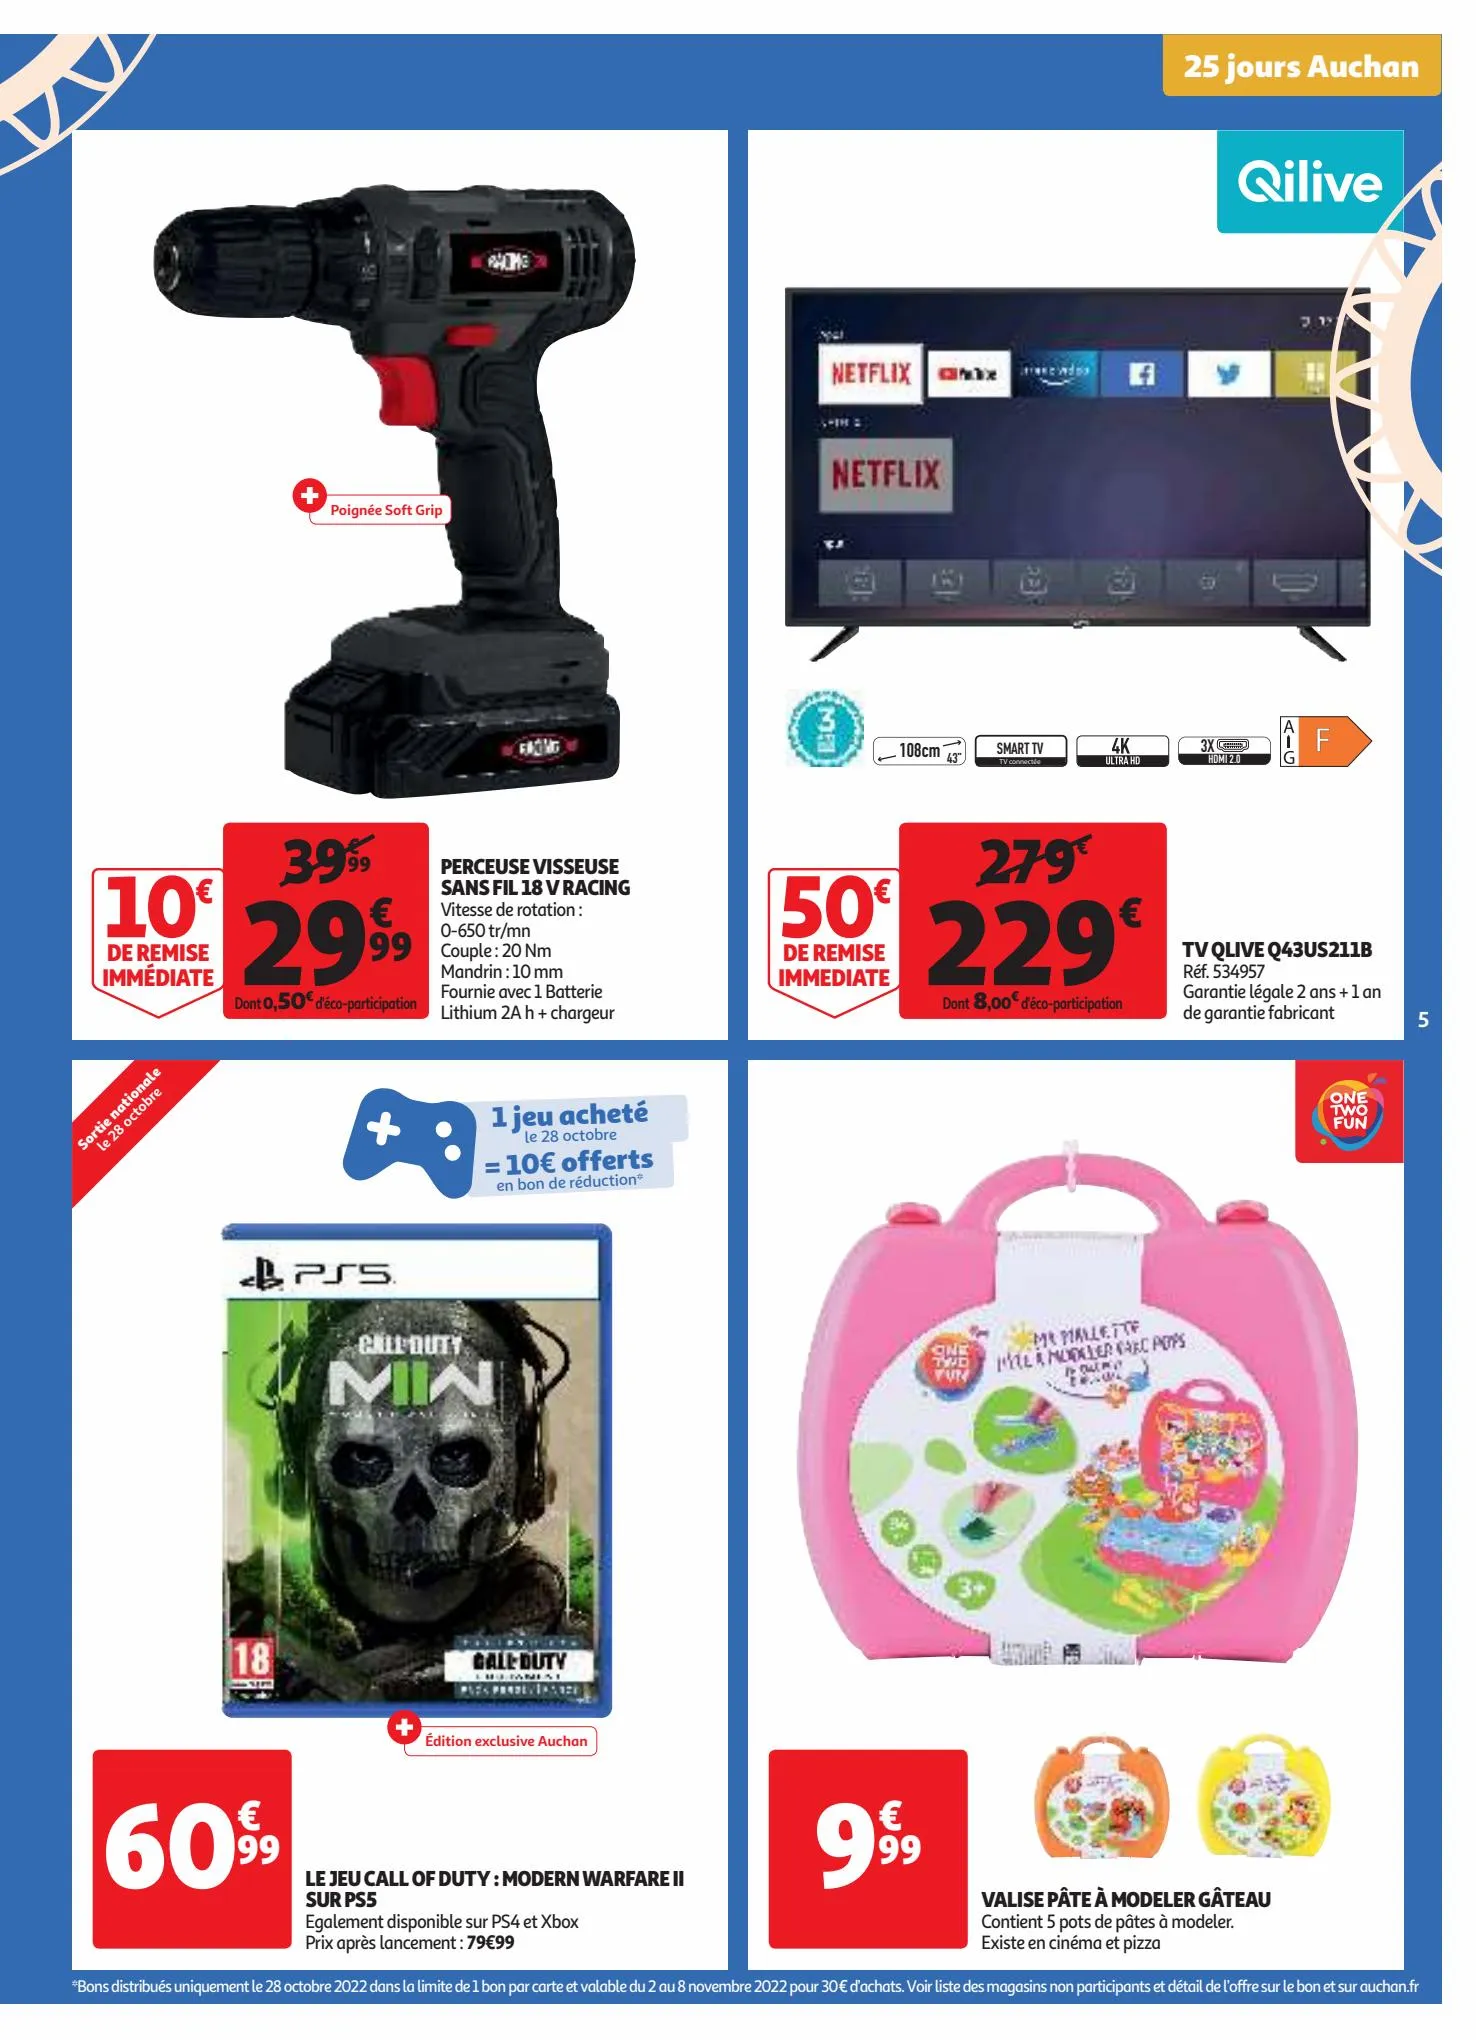 Catalogue 25 jours Auchan, page 00005